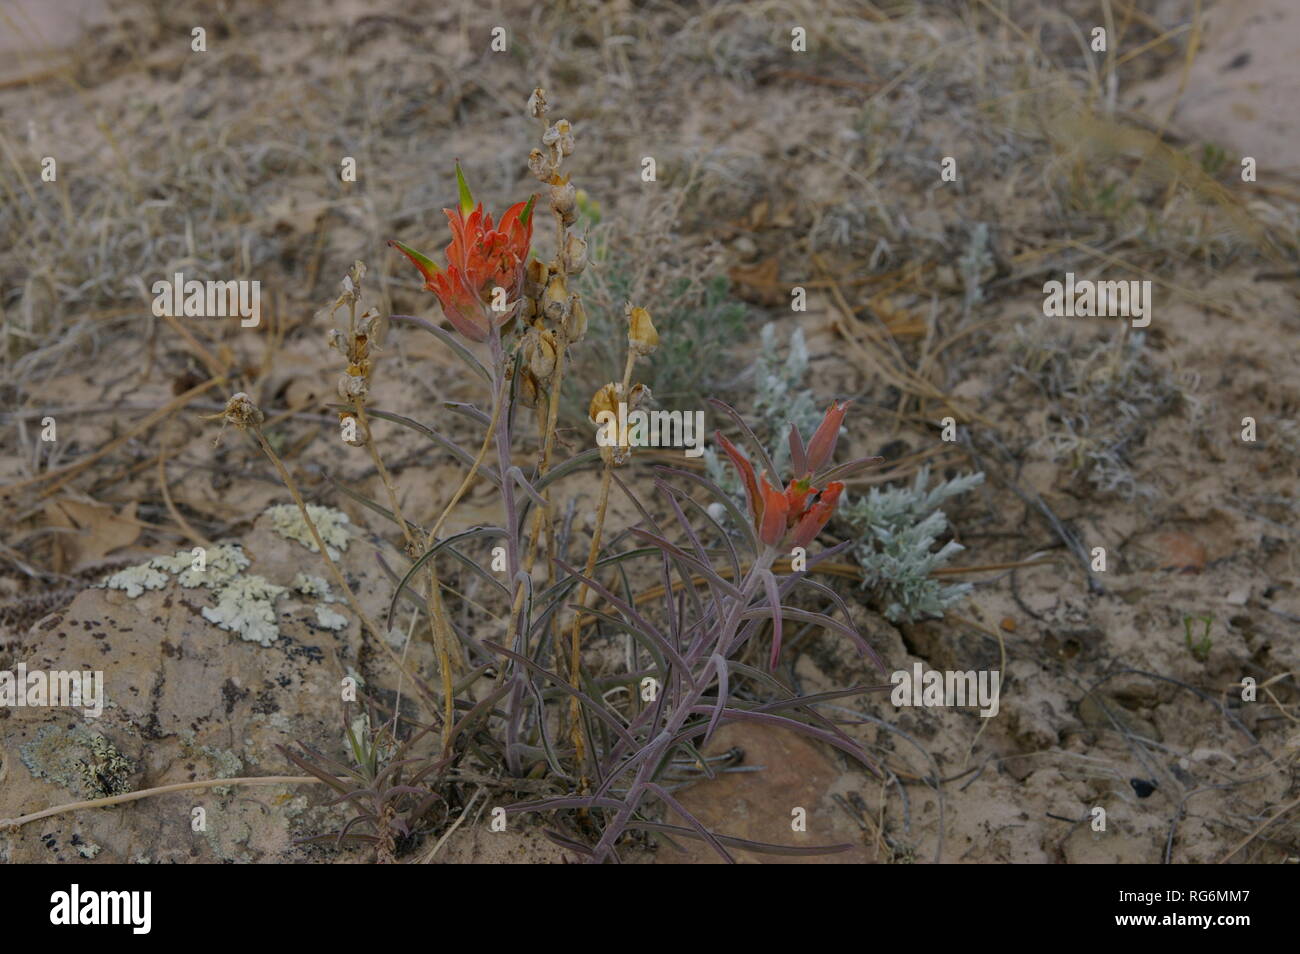 Indian Paintbrush (Castilleja) especies de flores in situ Foto de stock